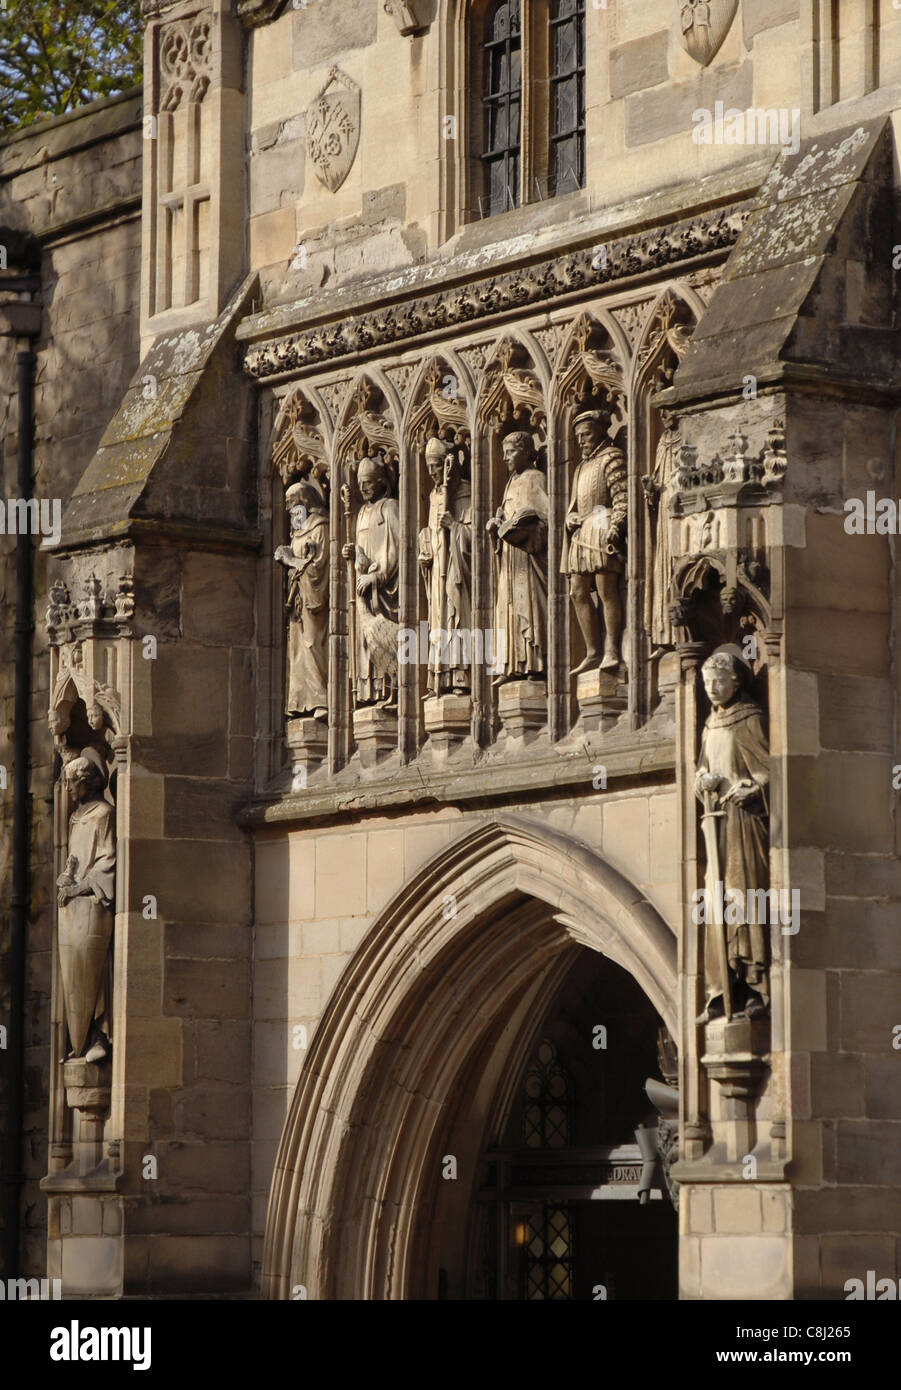 Cattedrale di Leicester. Il Normanno ha cominciato a costruire la chiesa di 900 anni fa. Dopo molti cambiamenti, divenne cattedrale nel 1927. Foto Stock